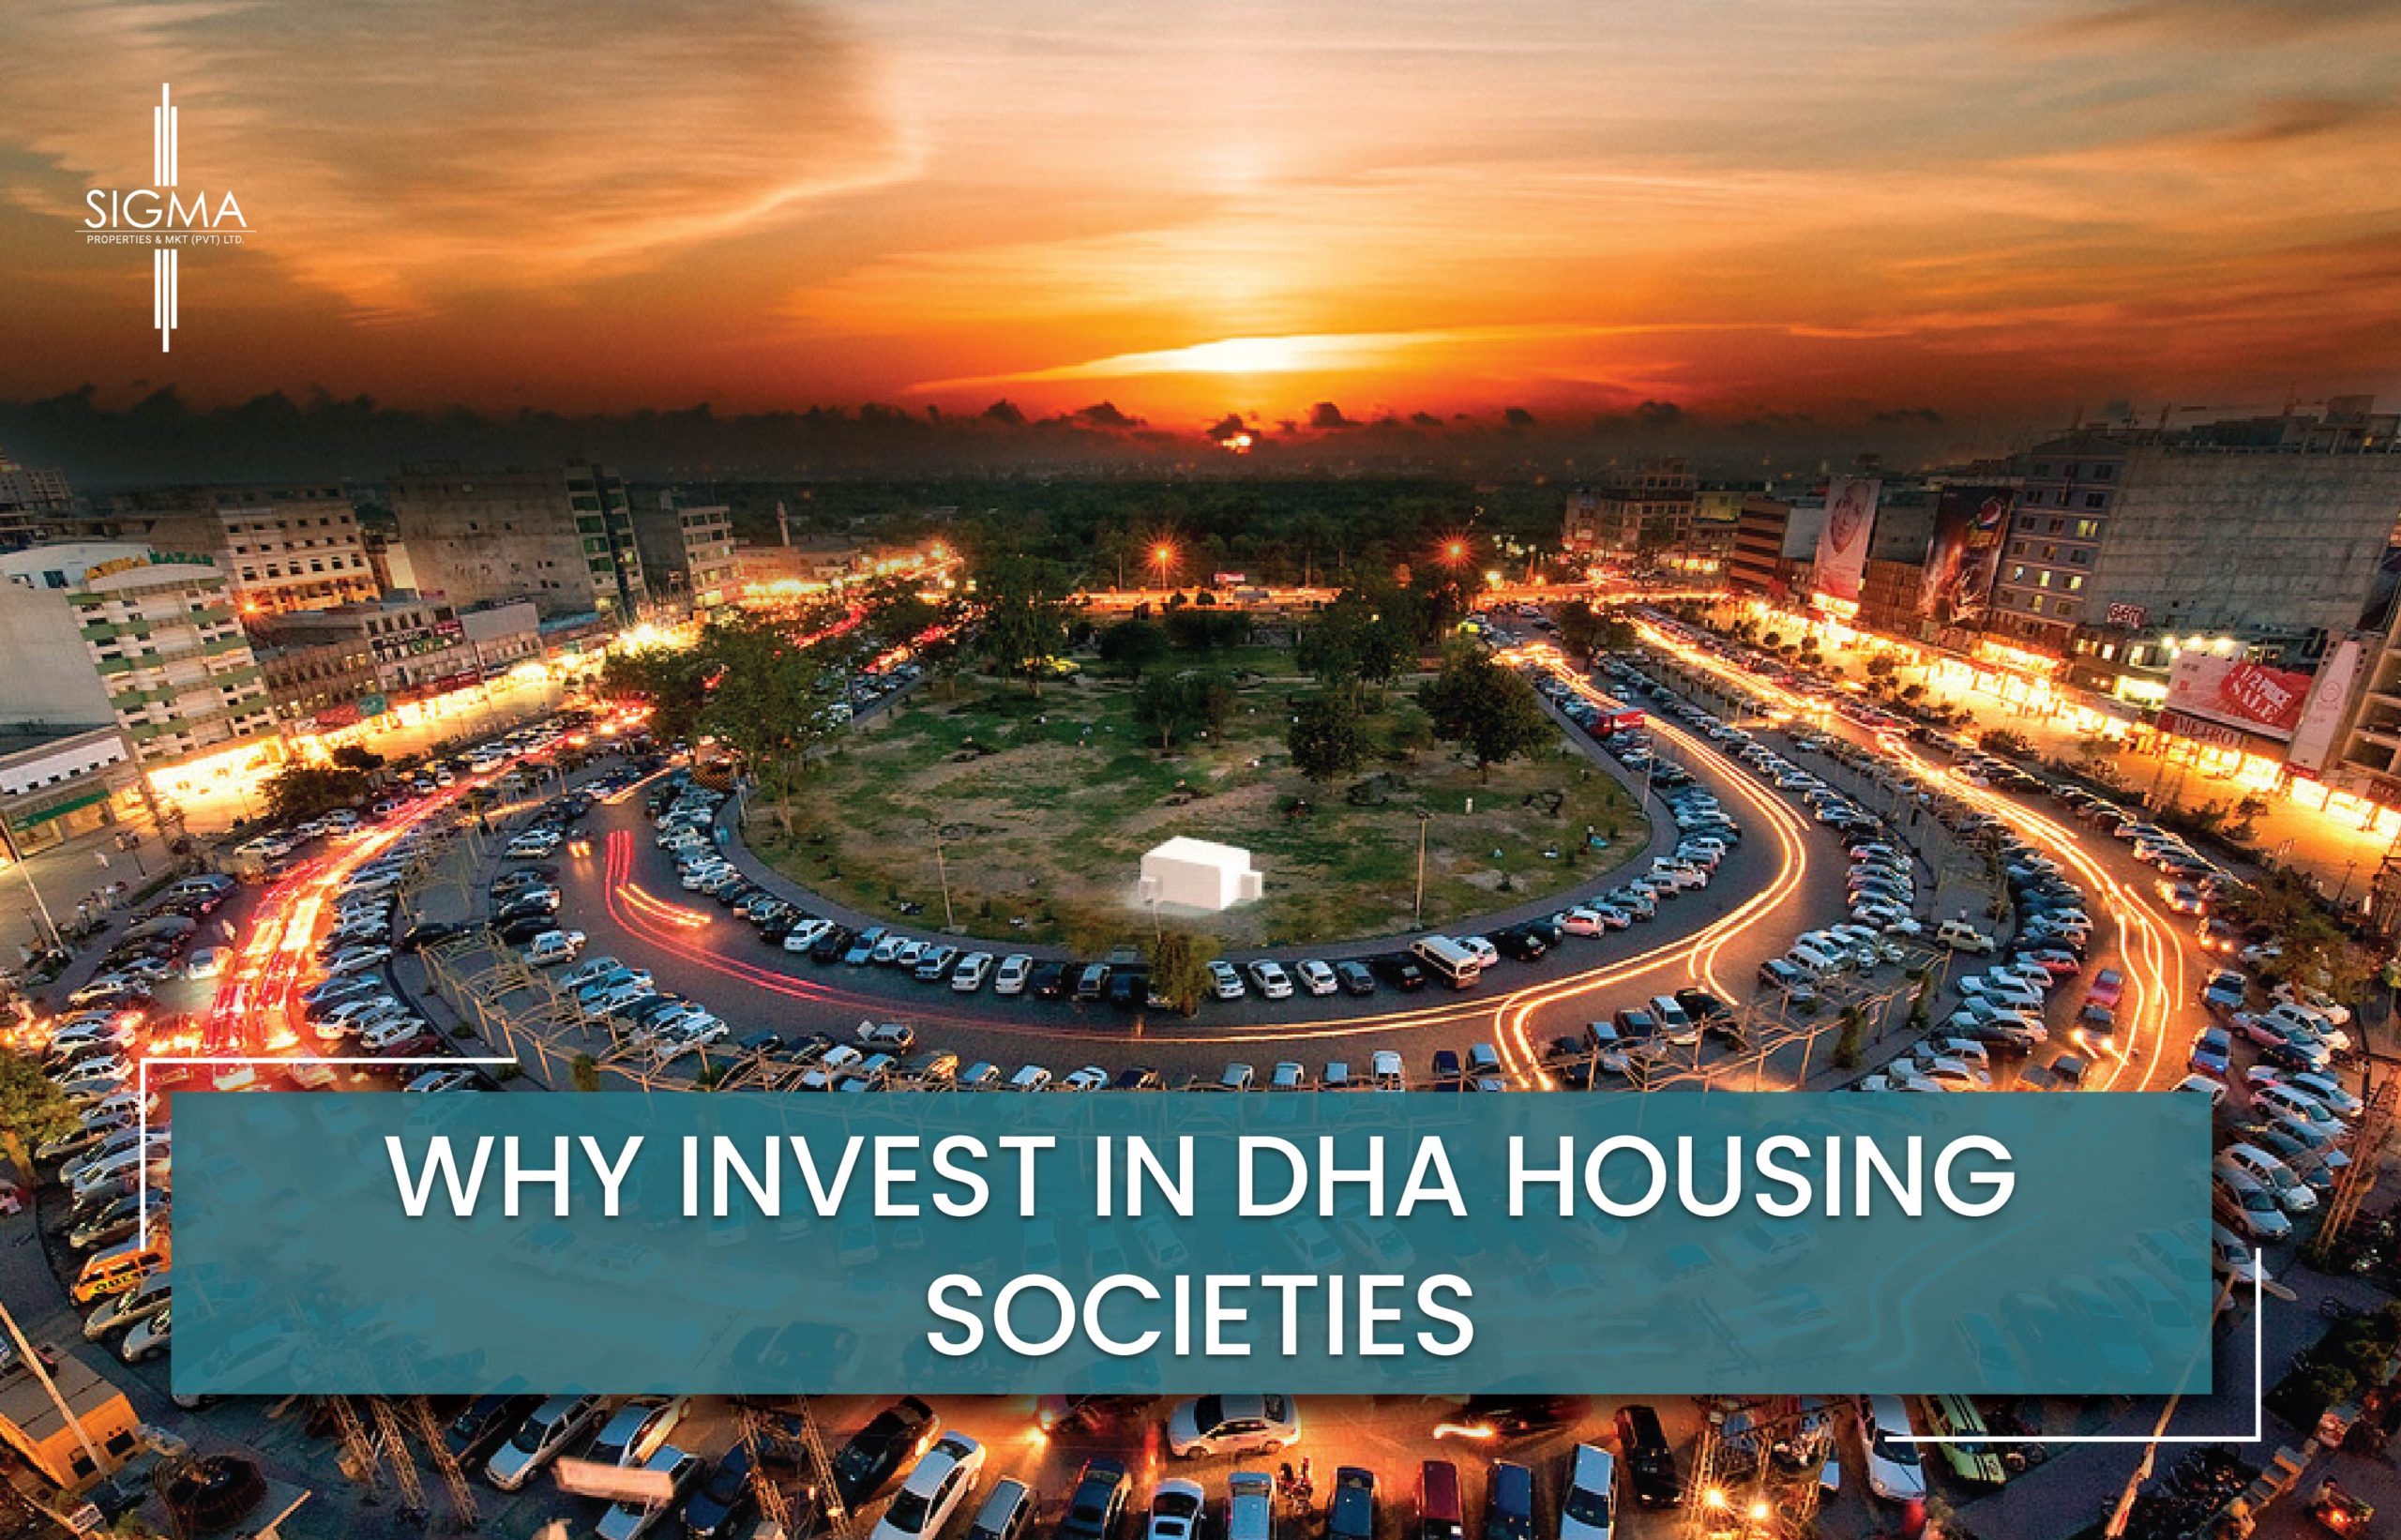 DHA Housing Societies